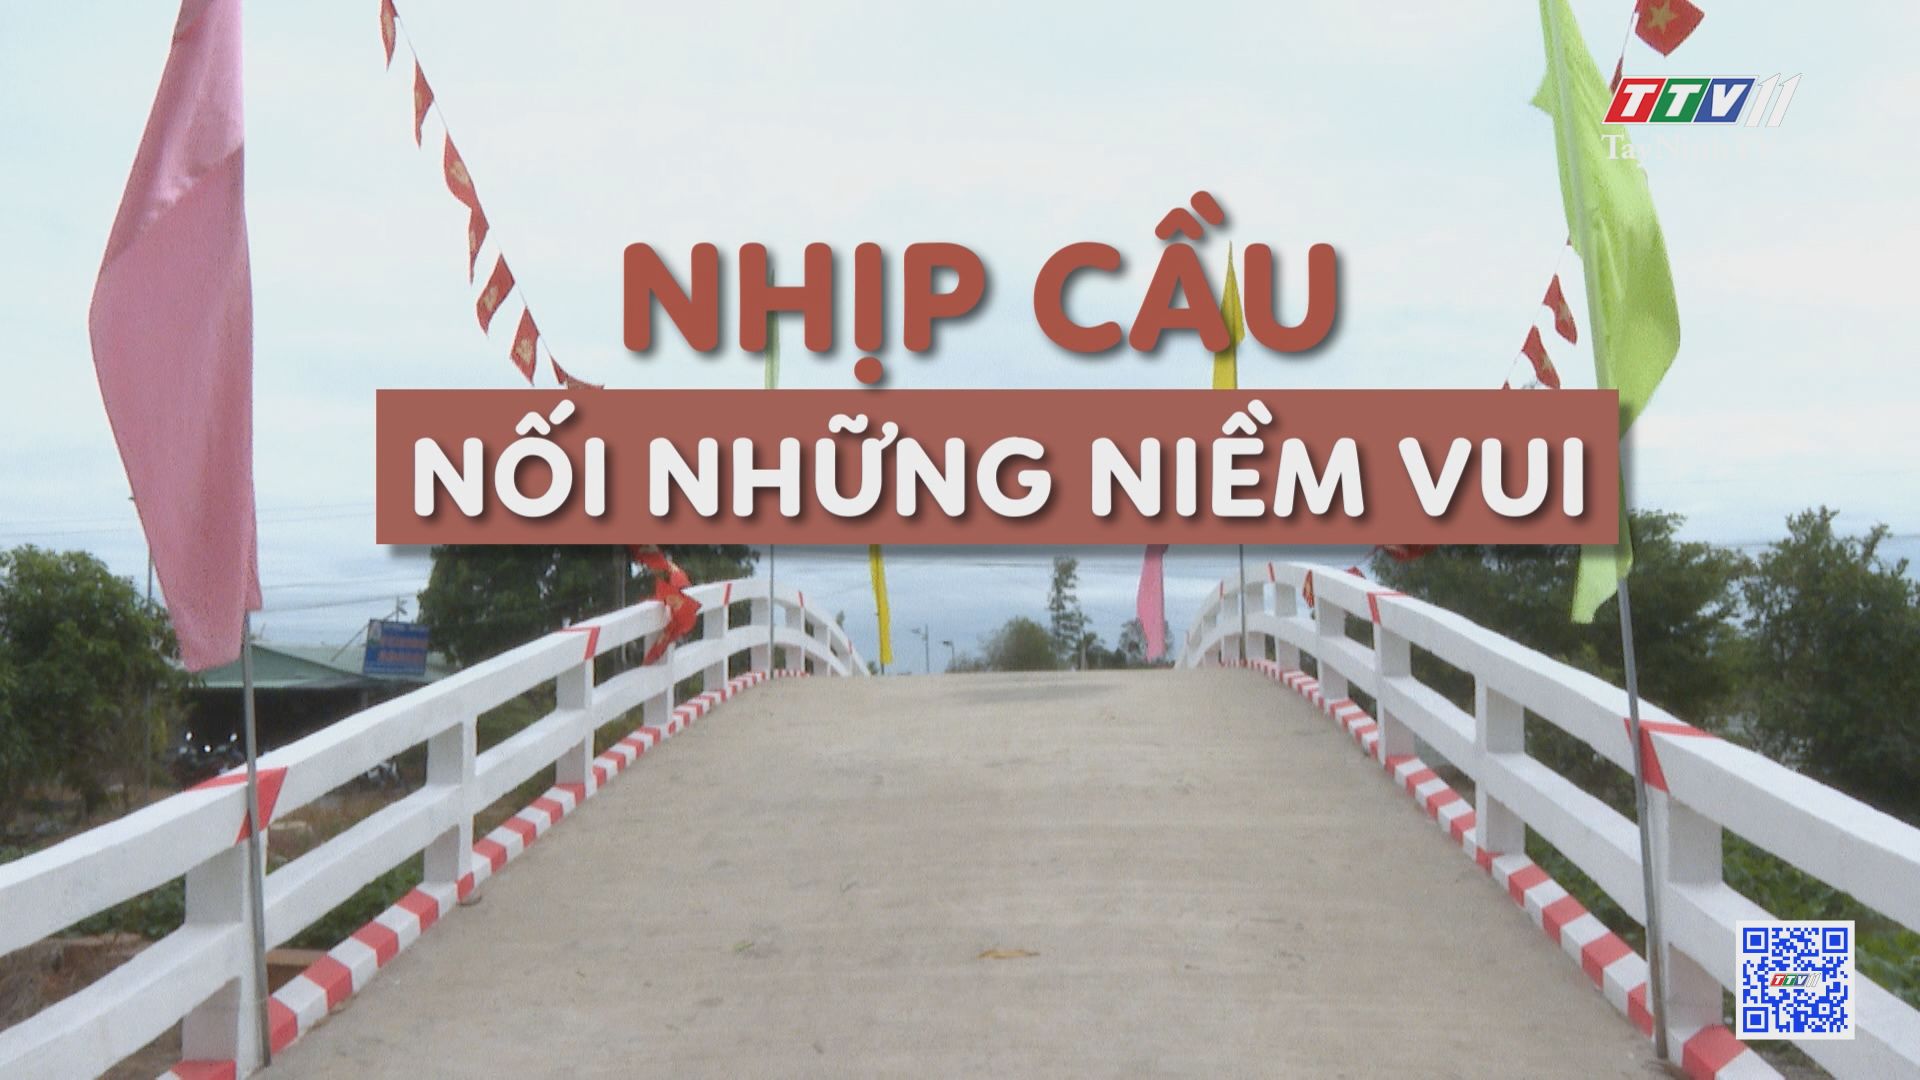 Nhịp cầu nối những niềm vui | Tây Ninh xây dựng nông thôn mới | TayNinhTV